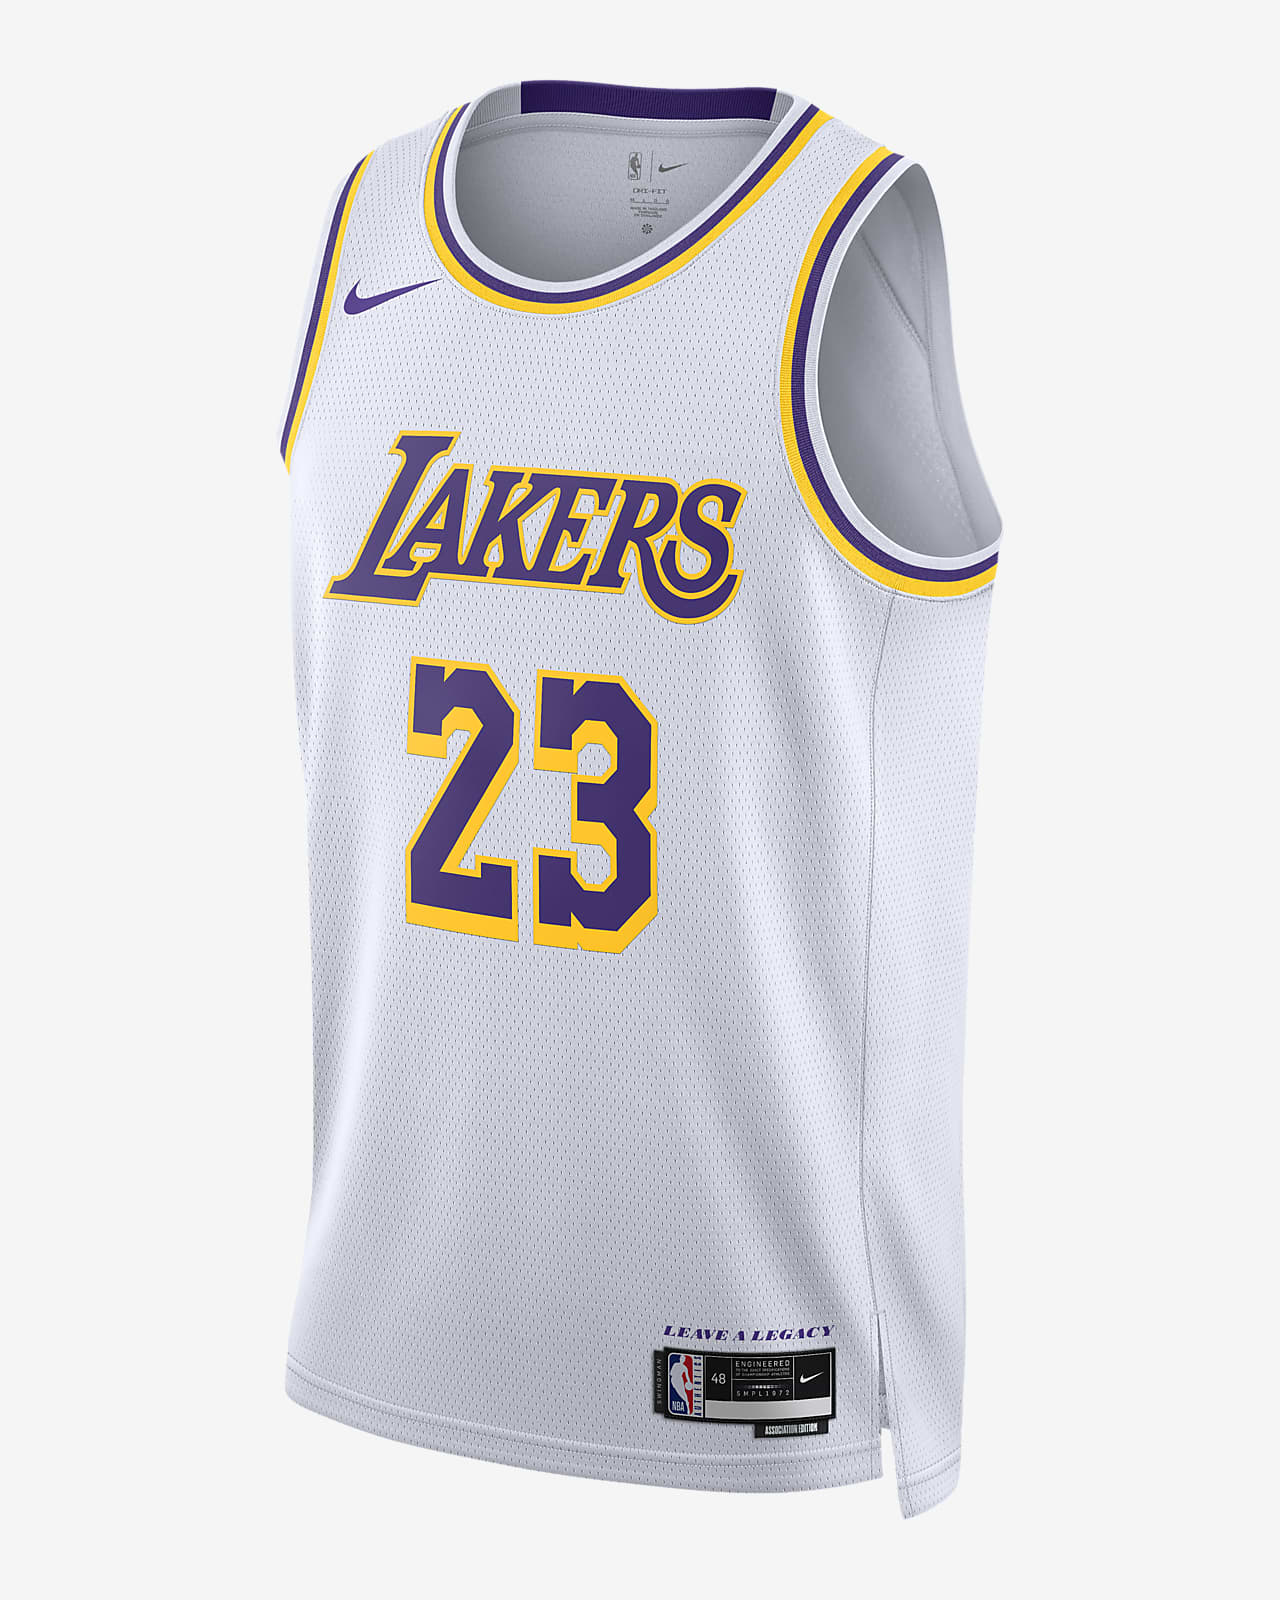 2022/23 赛季洛杉矶湖人队 Association Edition Nike Dri-FIT NBA Swingman Jersey 男子速干球衣